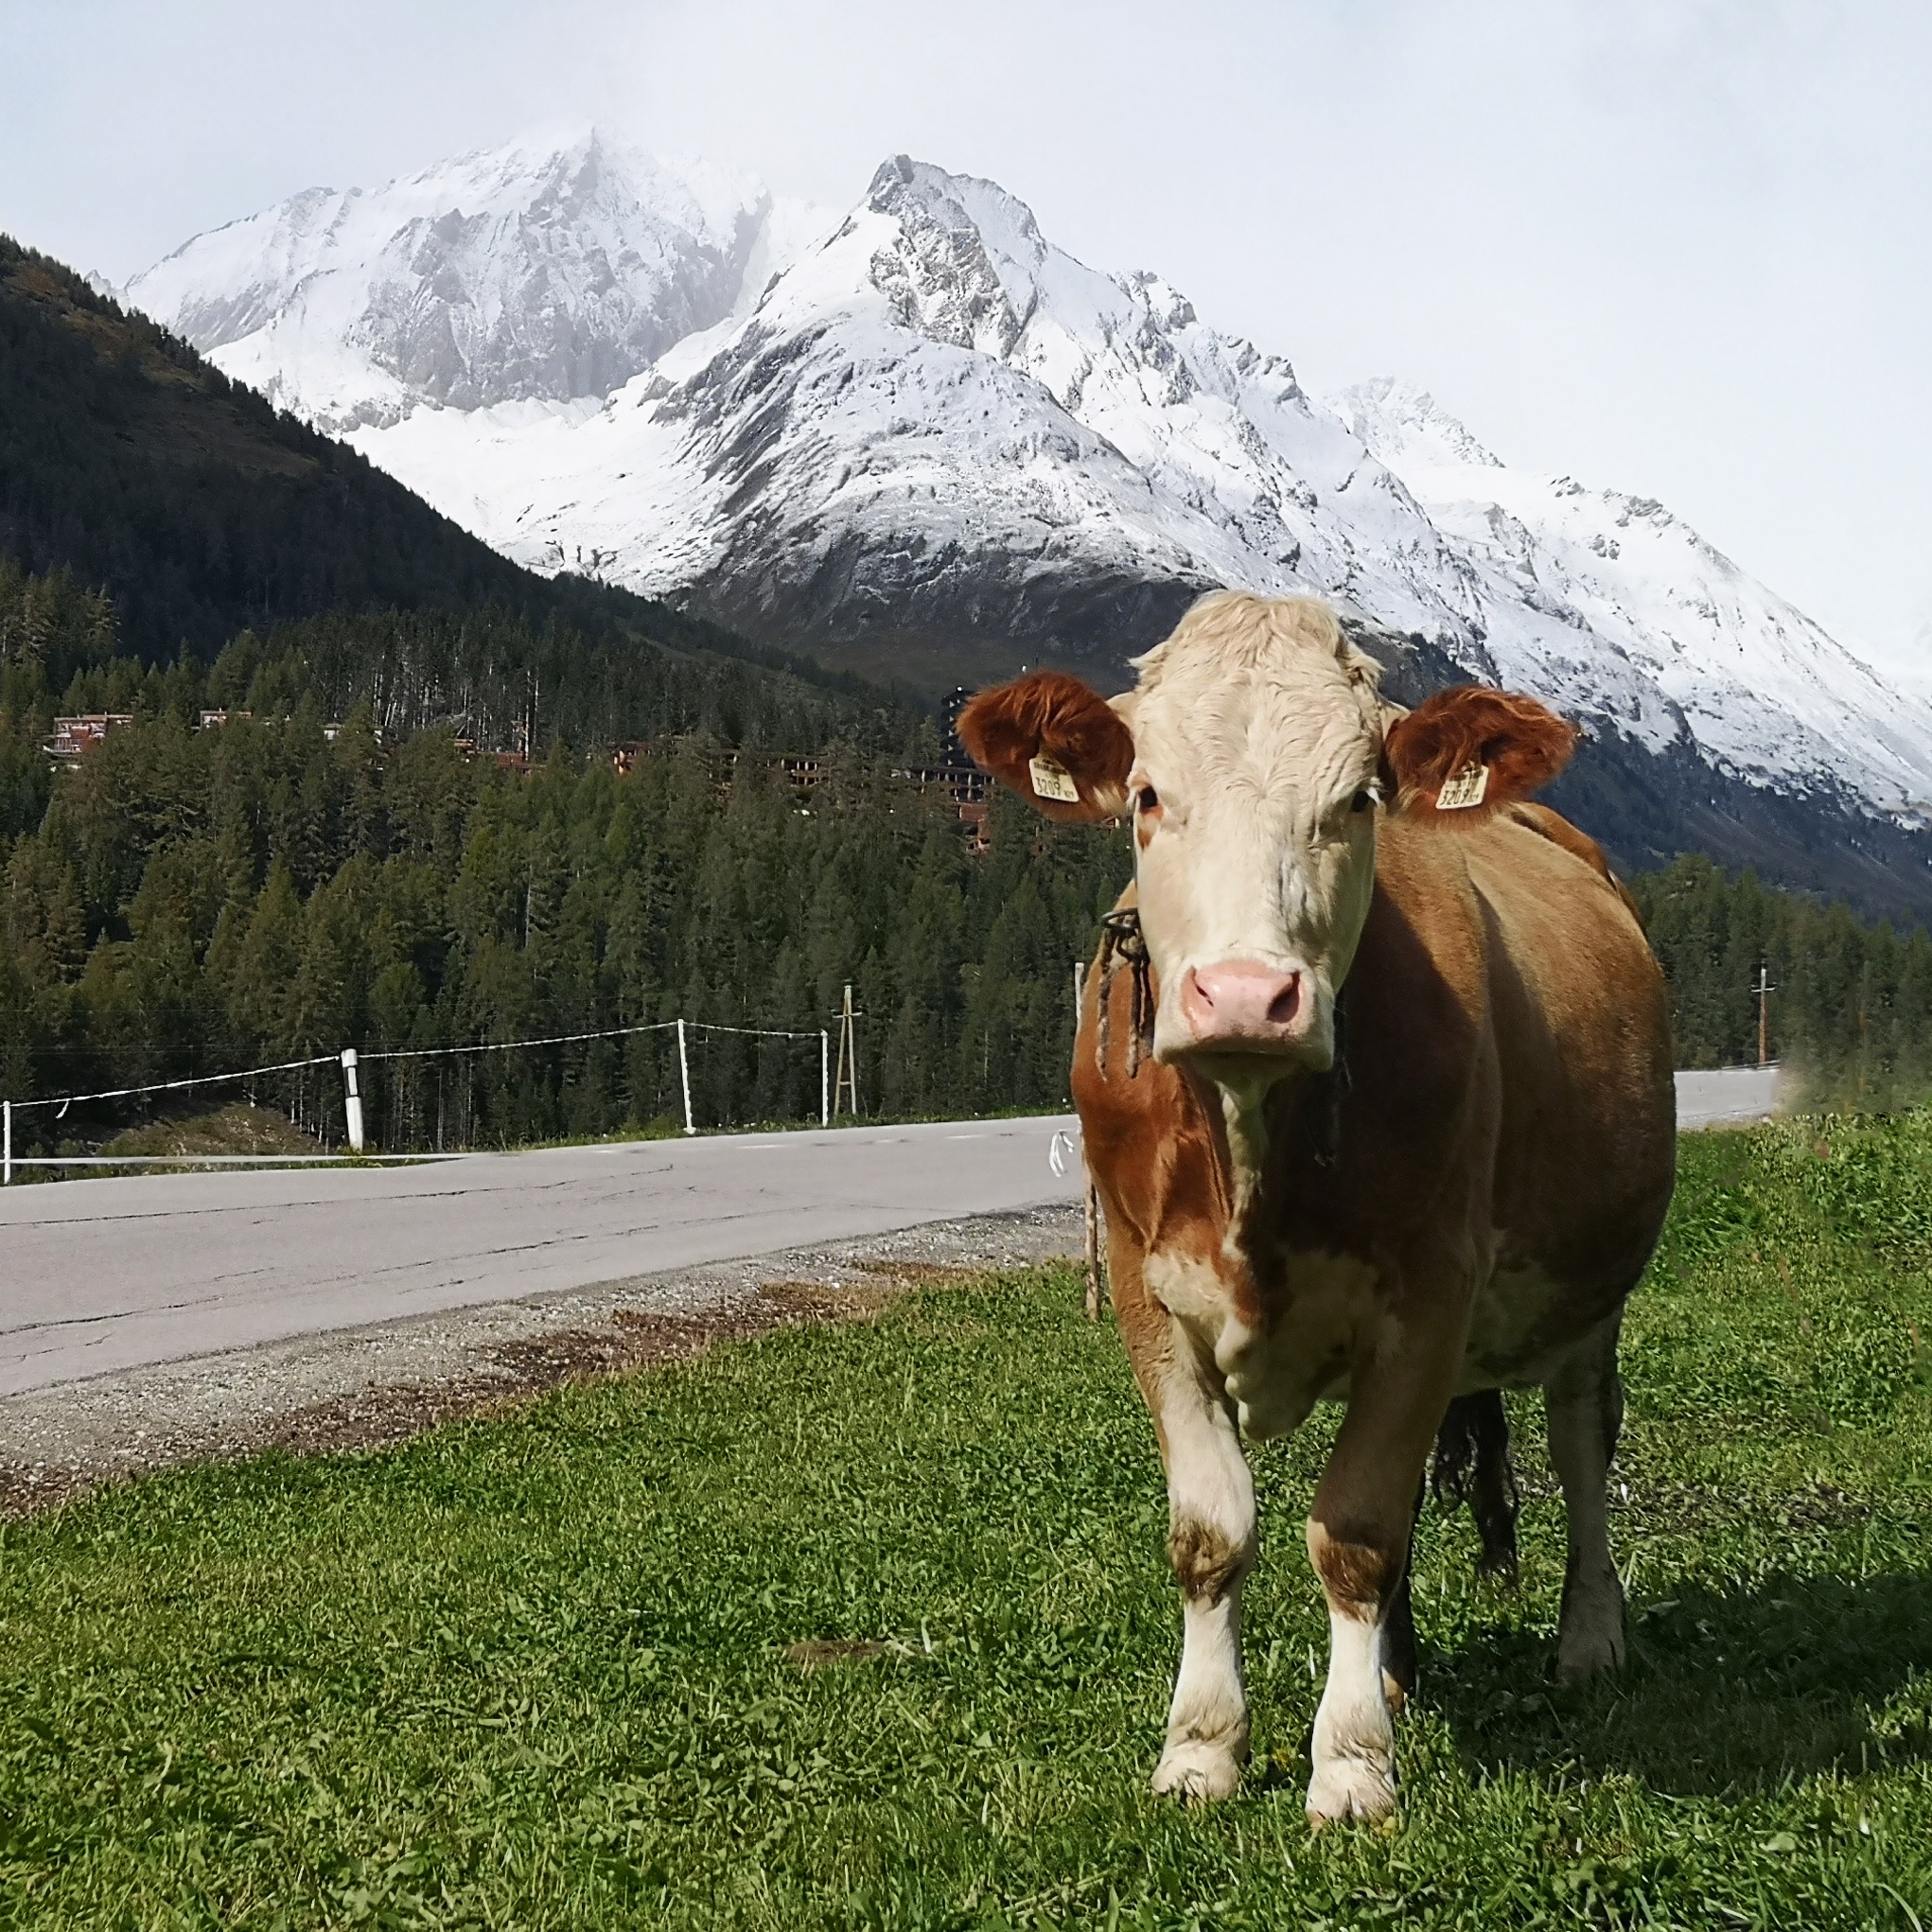 Road trip in Austria